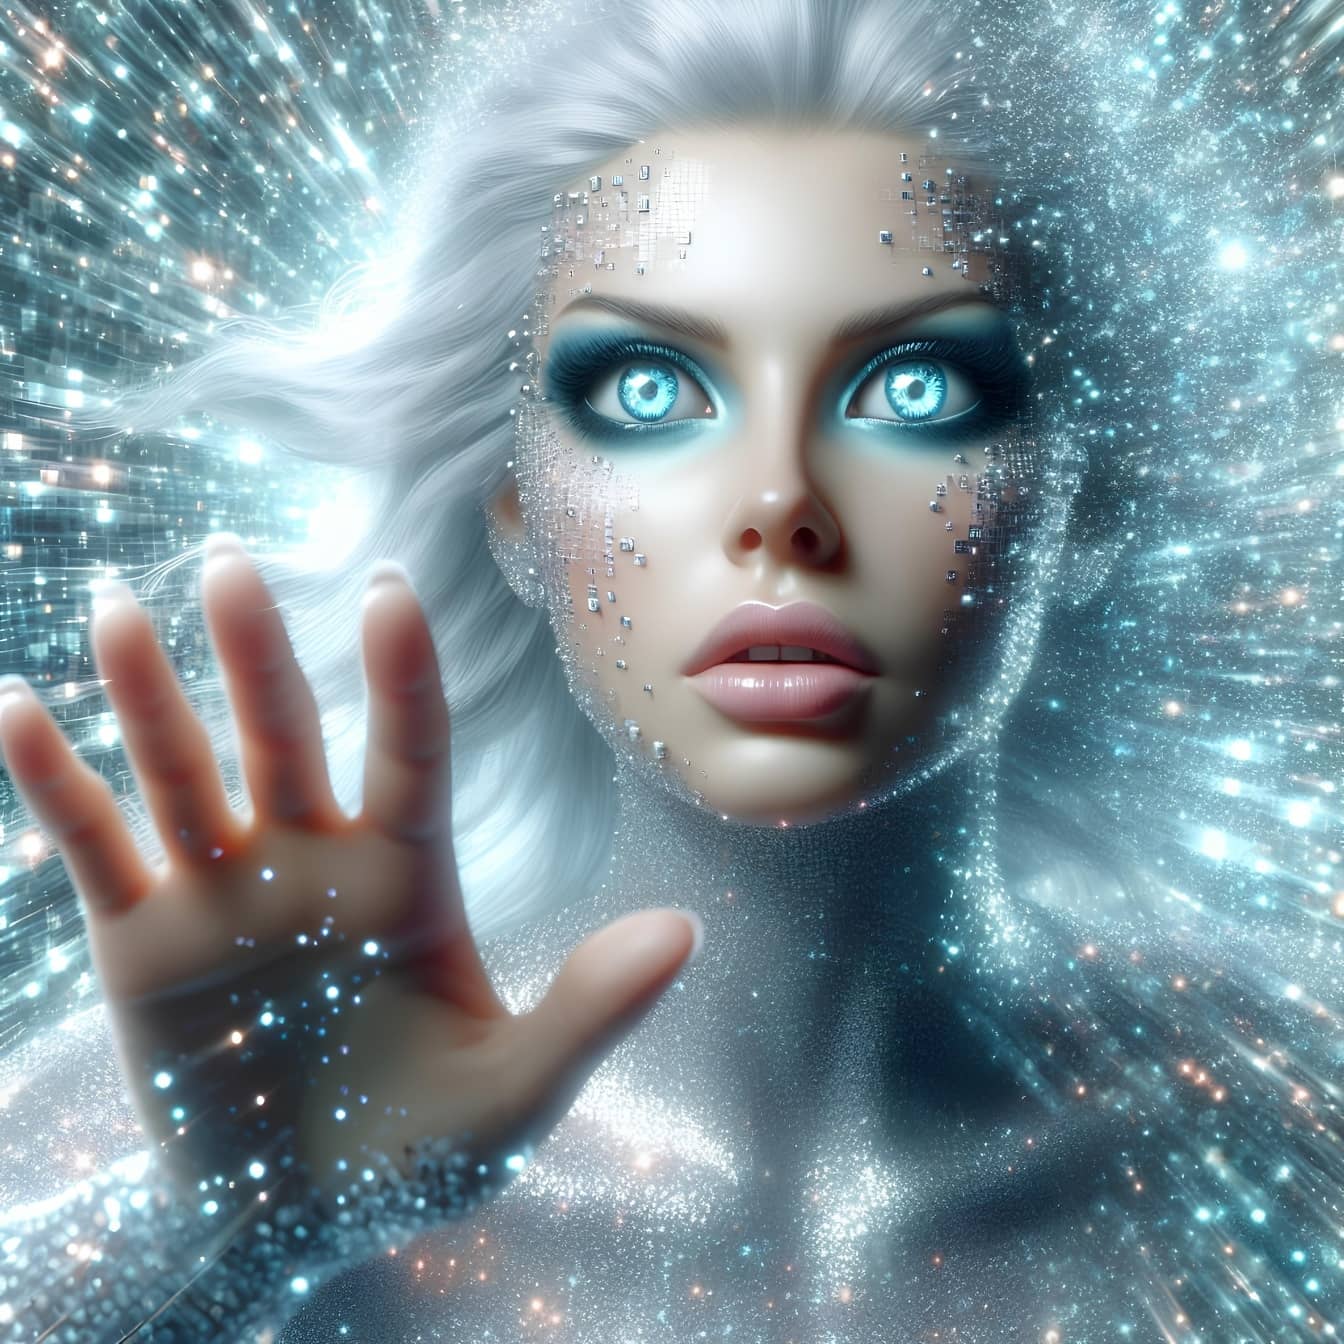 La femme-cyborg humanoïde utilise la technique de l’hypnose quantique pour transférer l’énergie astrale